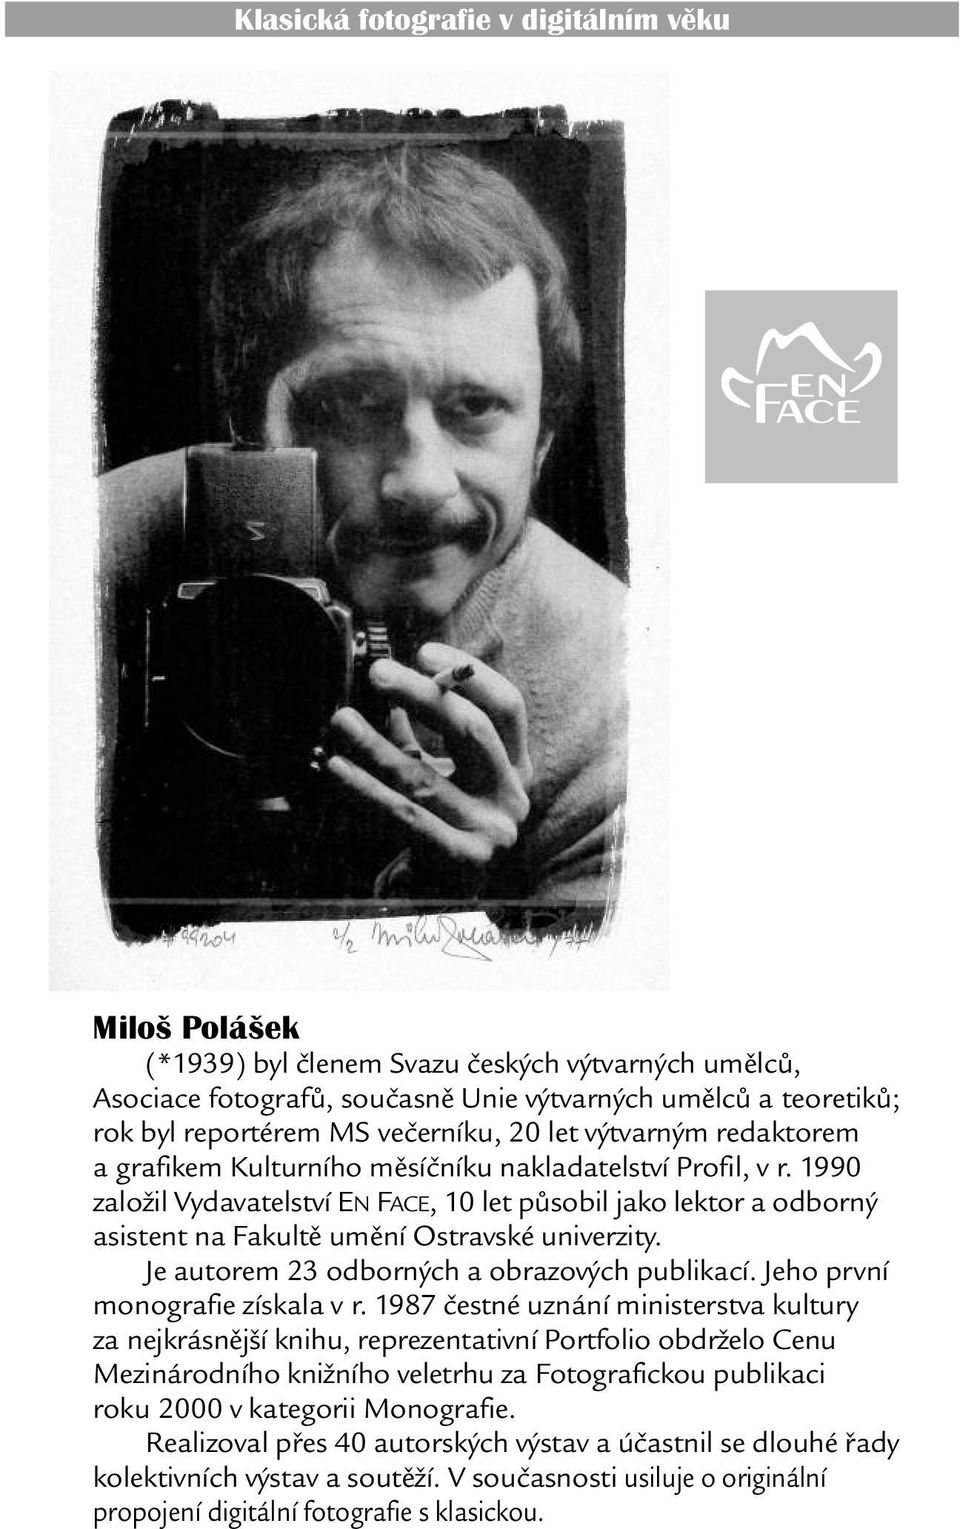 1990 založil Vydavatelství EN FACE, 10 let pùsobil jako lektor a odborný asistent na Fakultì umìní Ostravské univerzity. Je autorem 23 odborných a obrazových publikací.